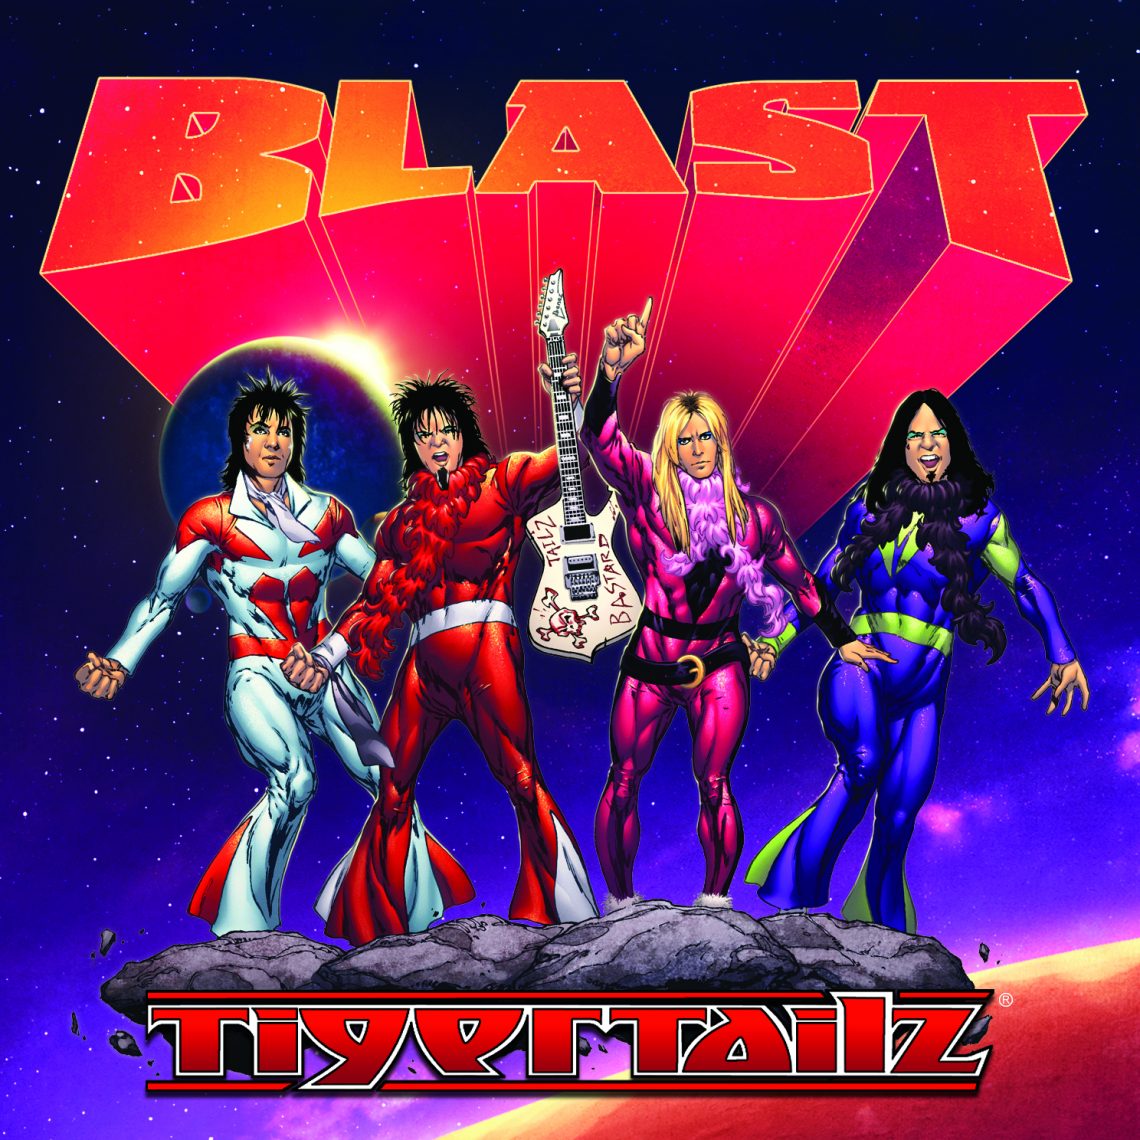 Tigertailz – Blast – CD Review